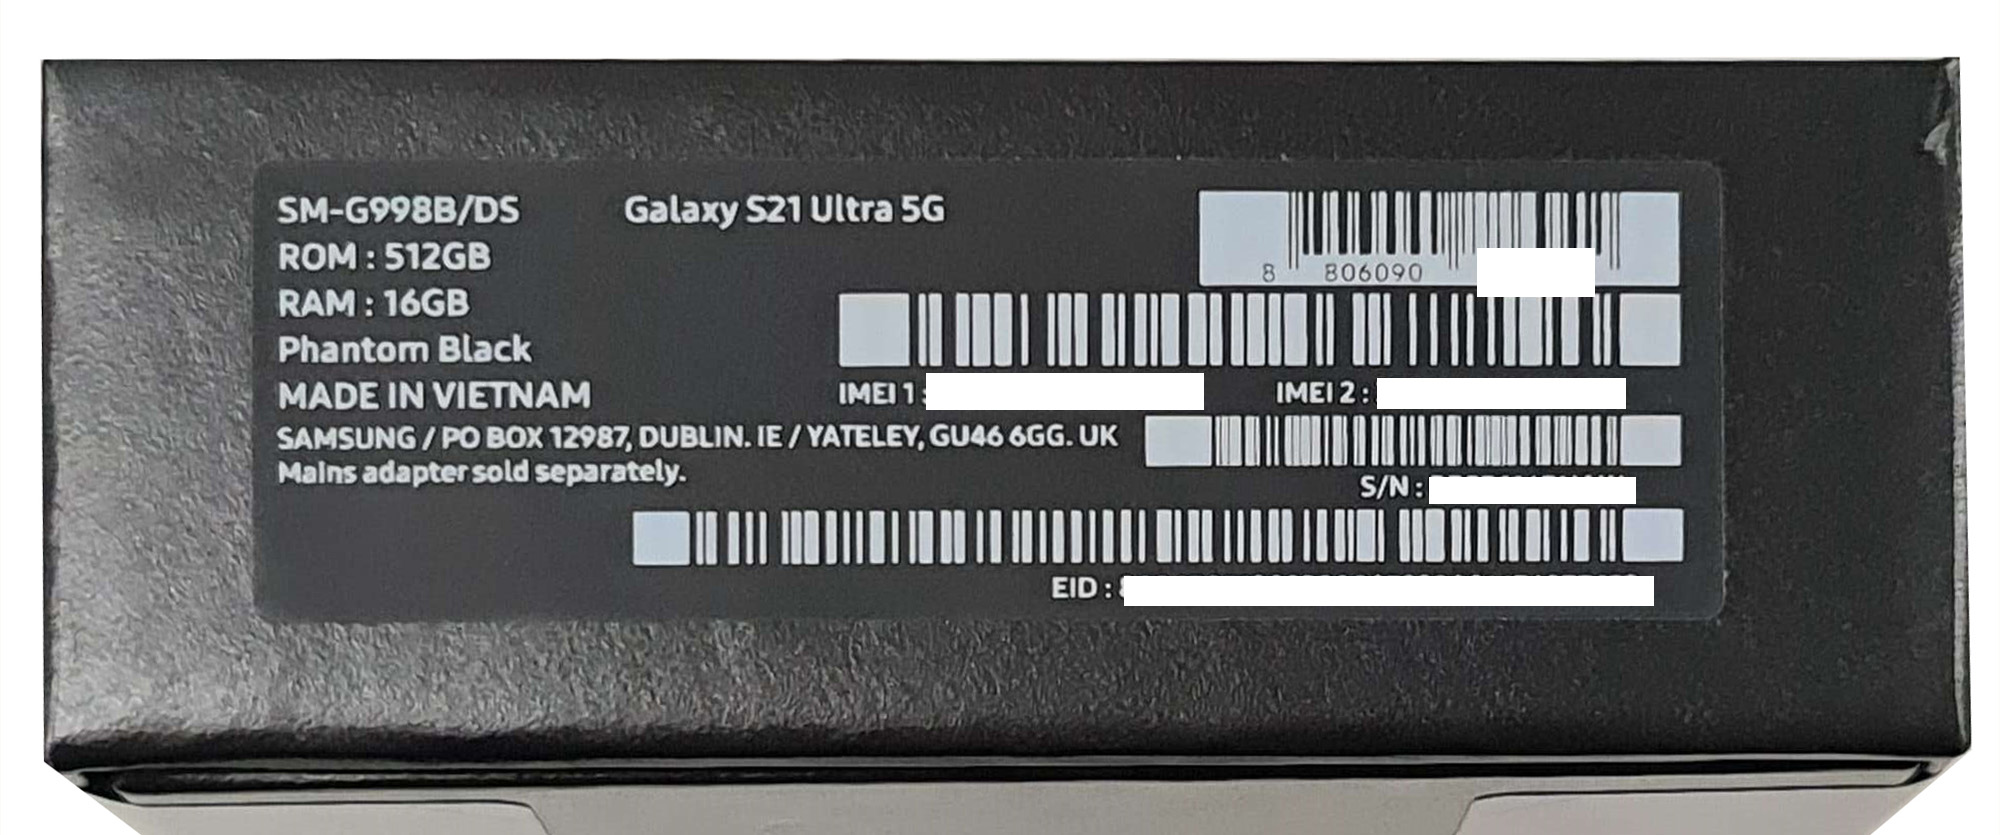 Сайт самсунг проверить серийный номер. Samsung Galaxy s22 Ultra IMEI. Коробка от самсунг s21 ультра. IMEI Samsung Galaxy s21 Ultra. Коробка от Samsung Galaxy s21 Ultra.